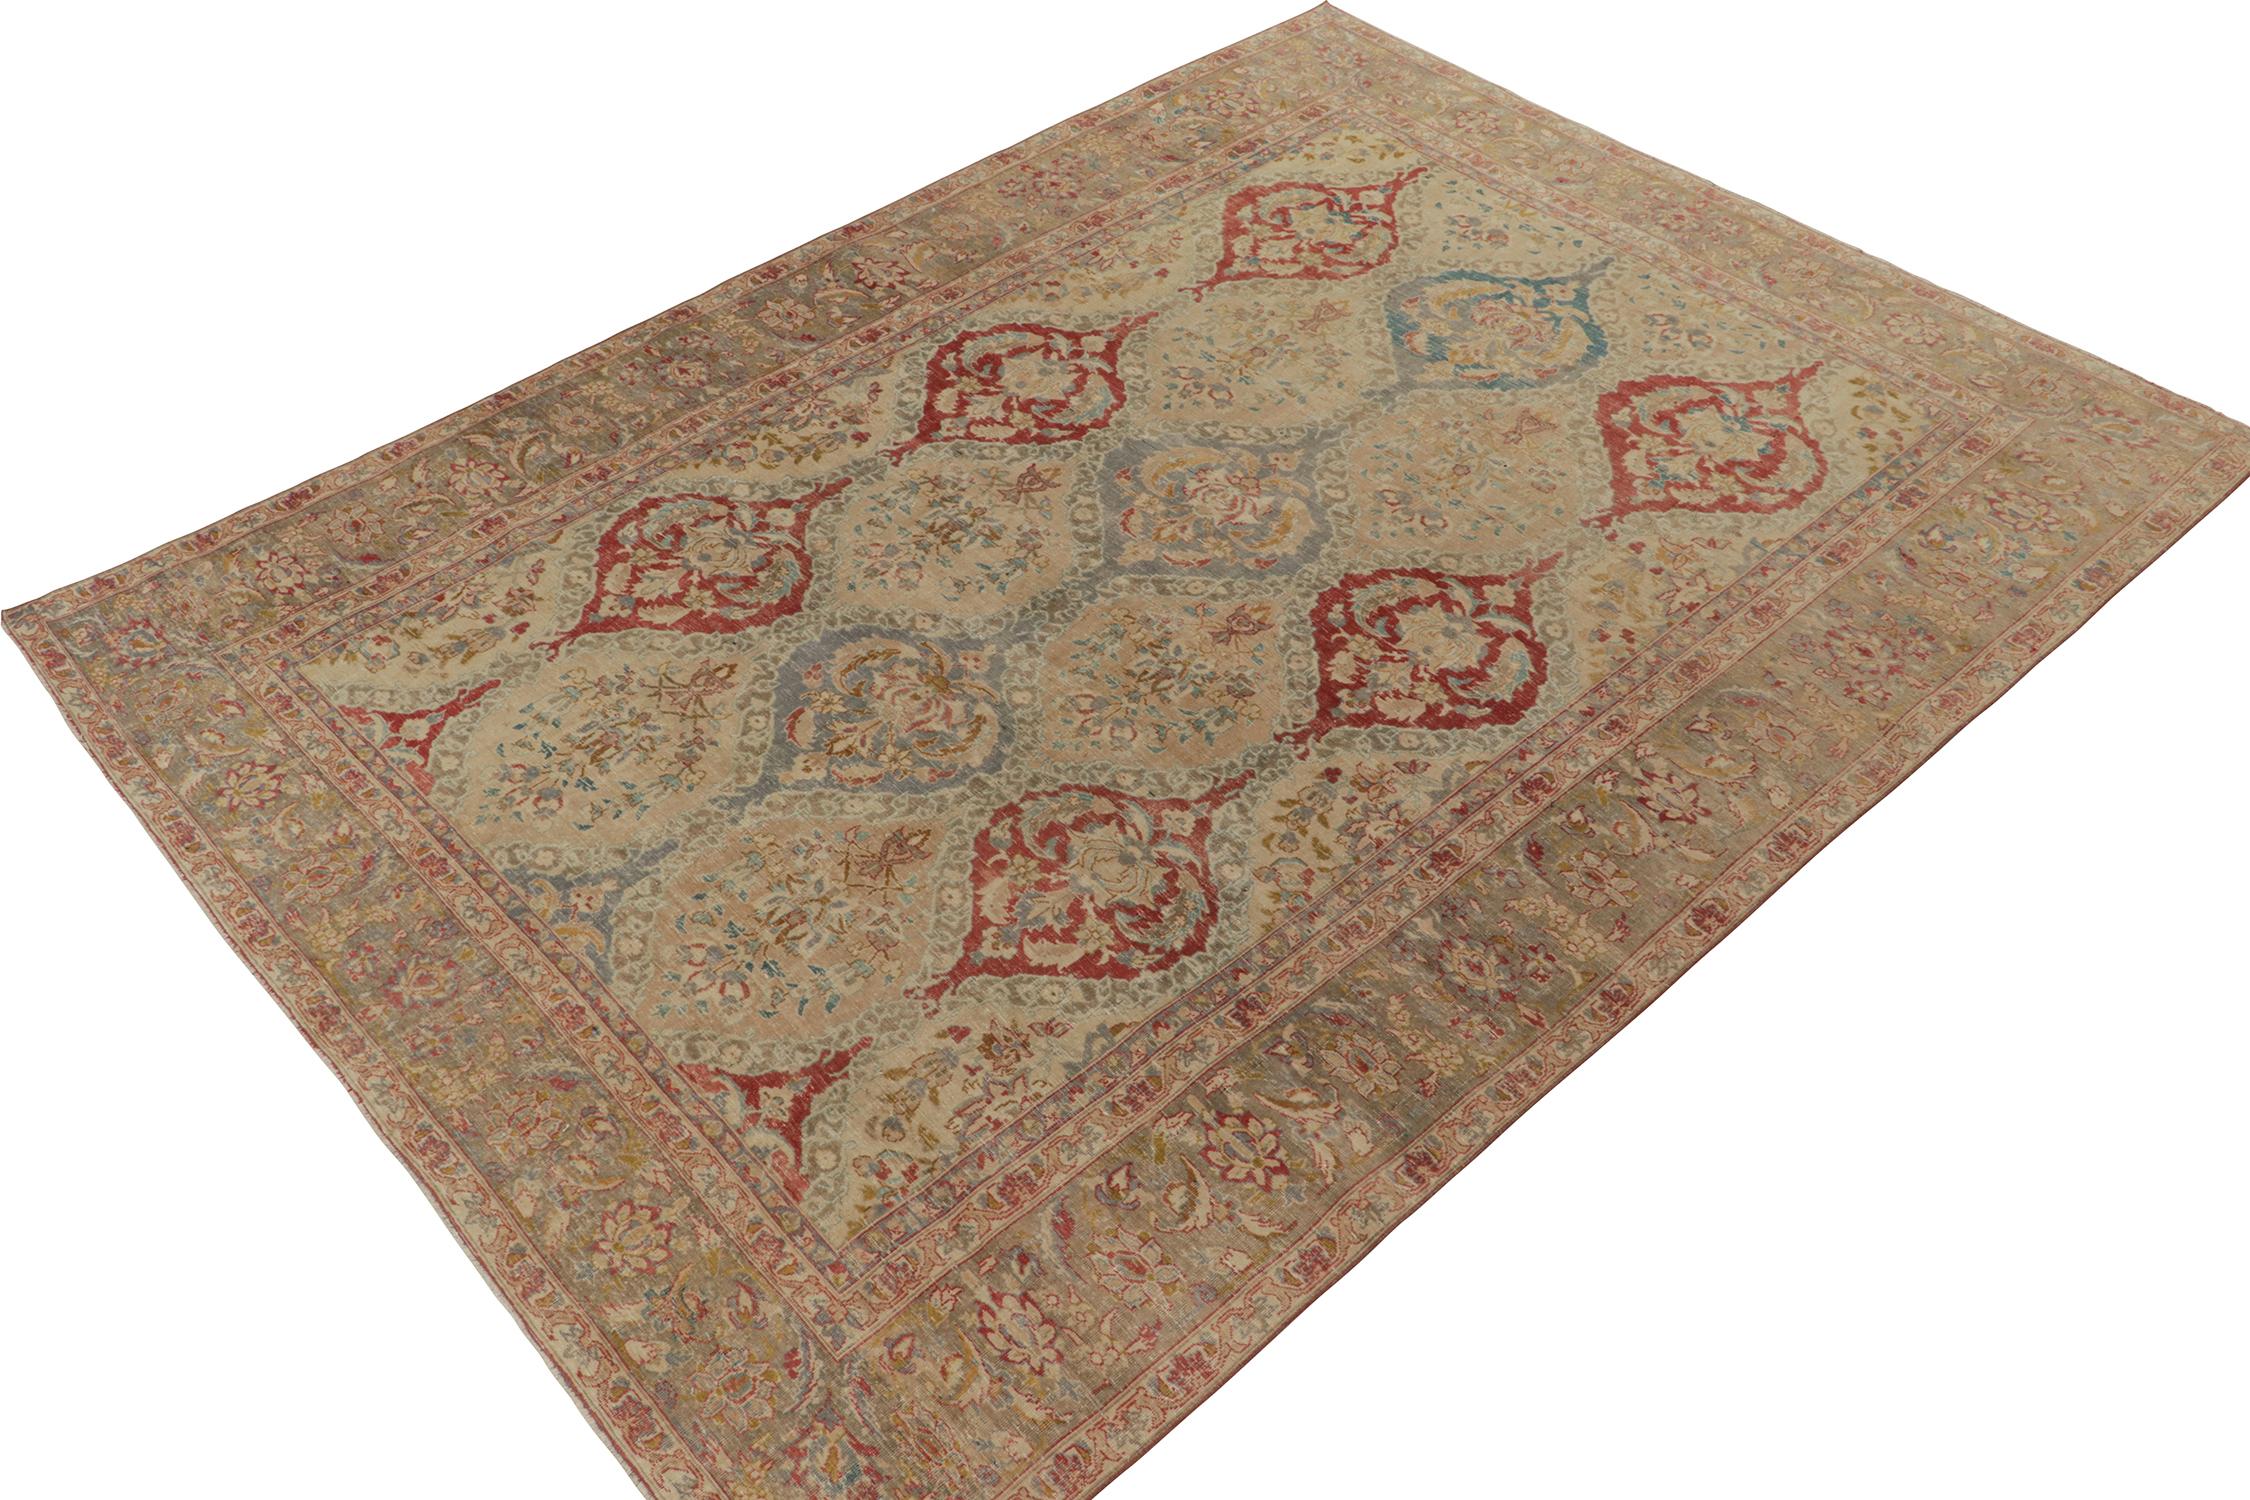 Un tapis Tabriz antique 9x12 de la sélection classique de Rug & Kilim, noué à la main en laine vers 1920-1940. Cette pièce magnifique présente des motifs floraux méticuleusement détaillés dans un beige doux avec des couleurs rouge, bleu et or. Les